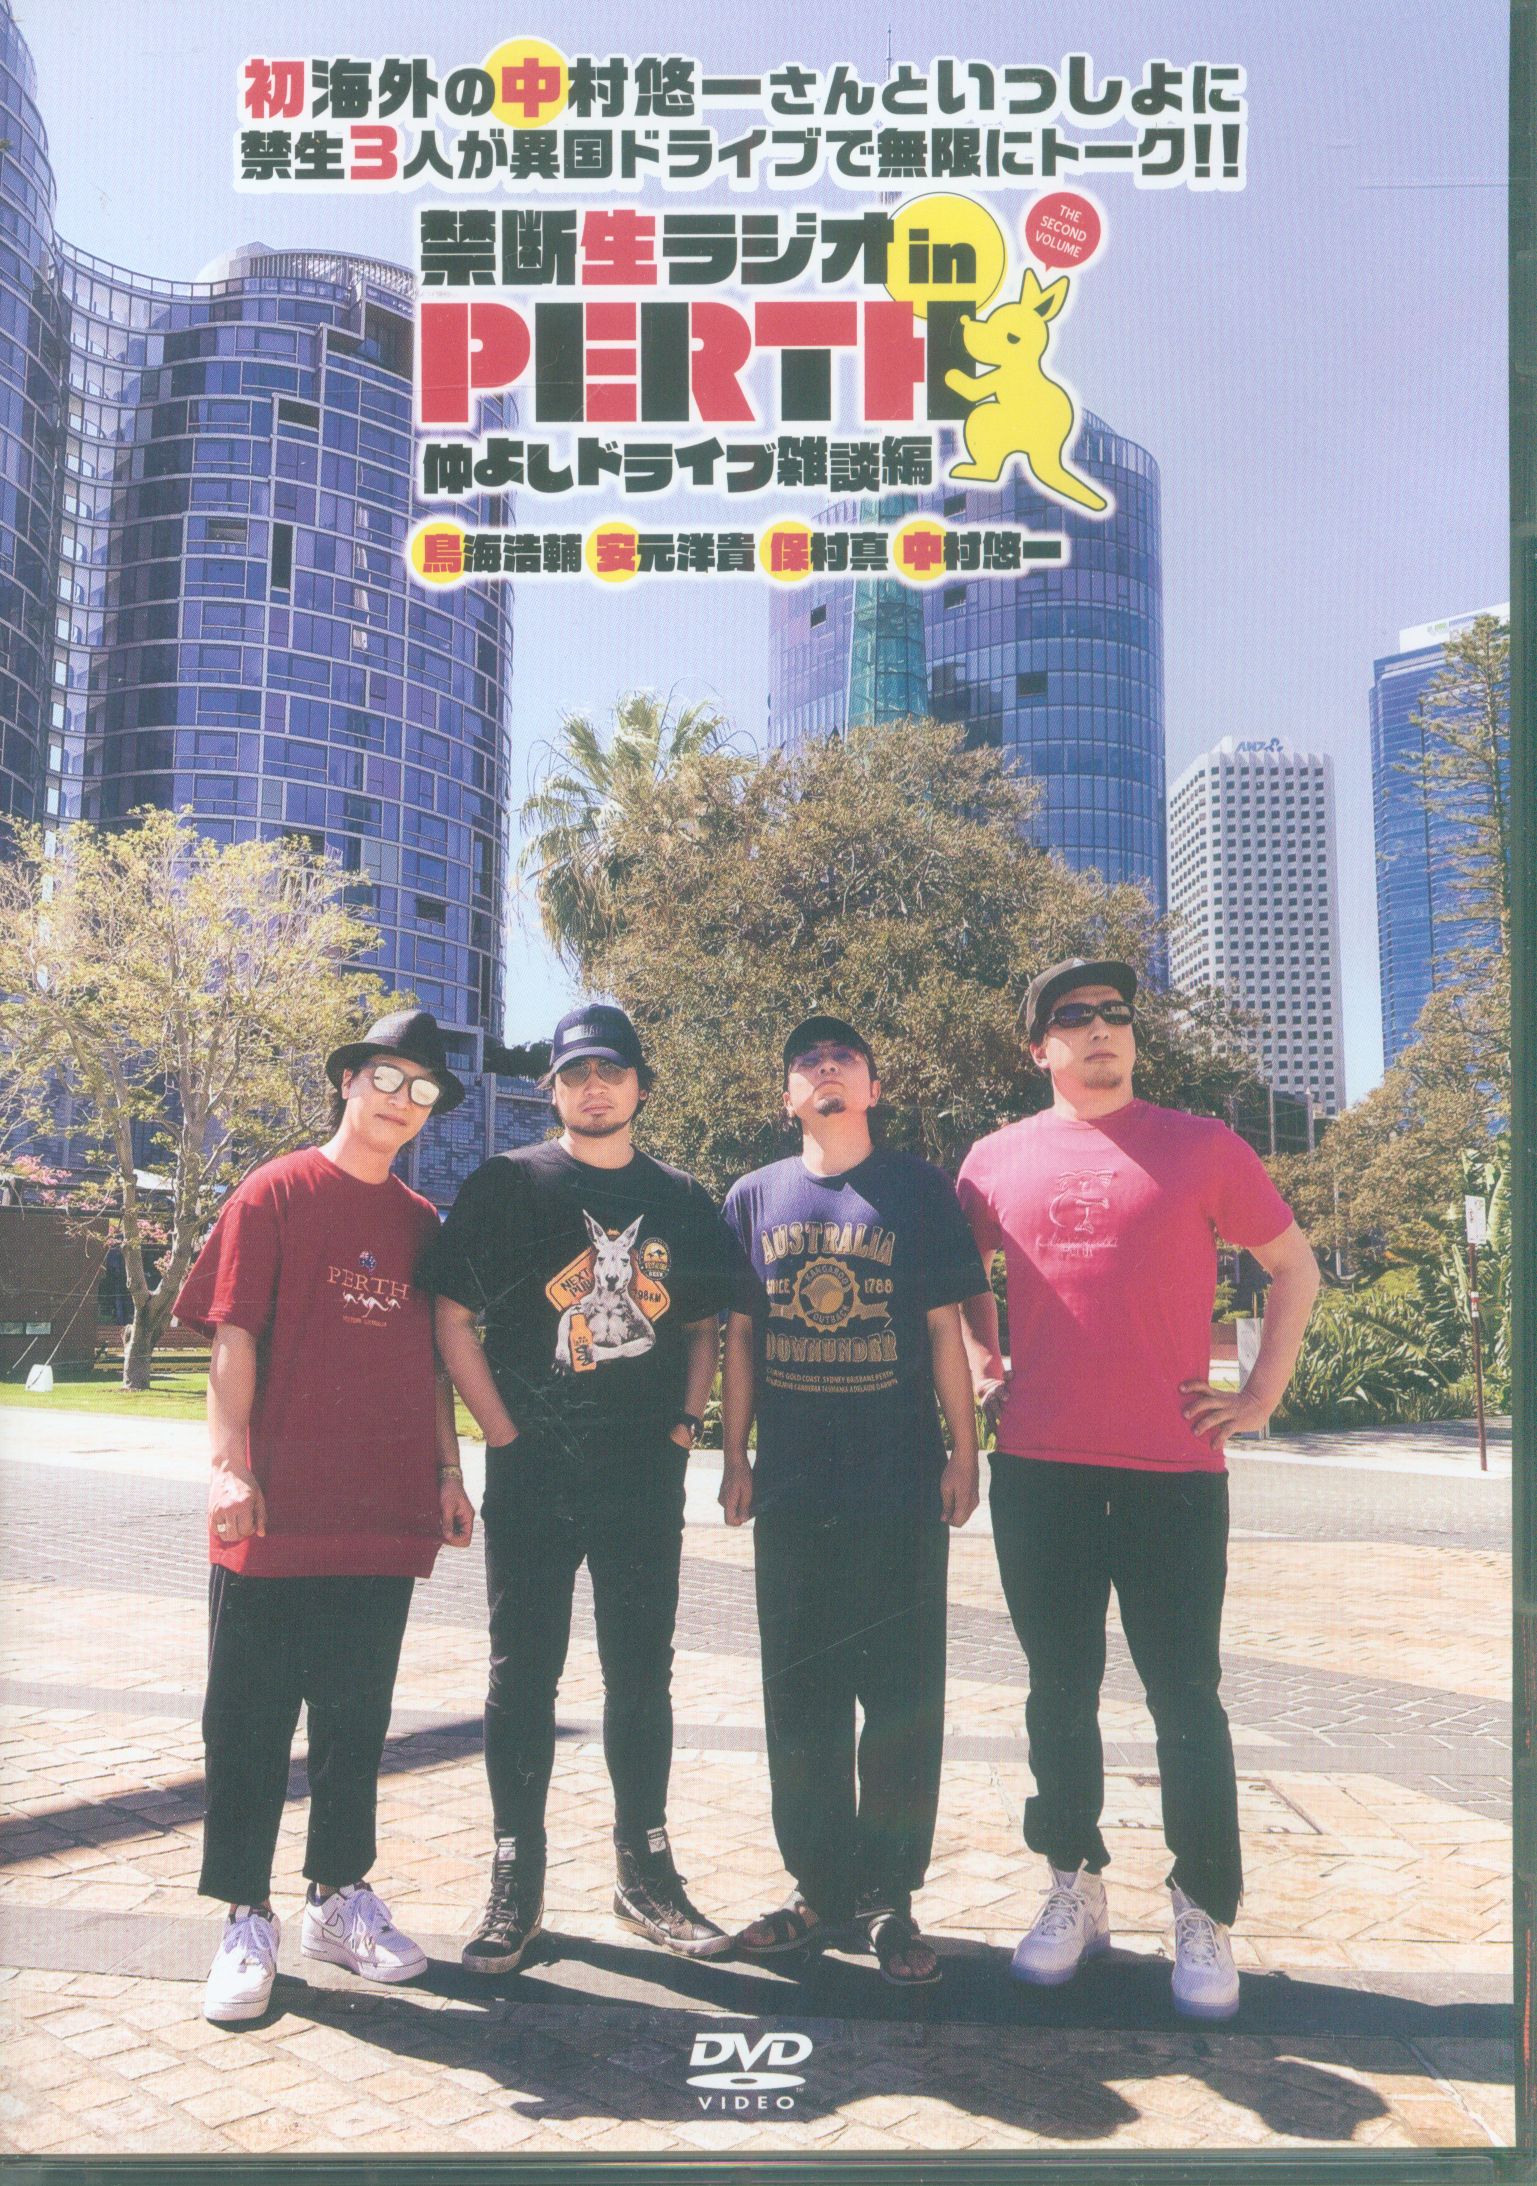 禁断生ラジオ PERTH パース DVD-